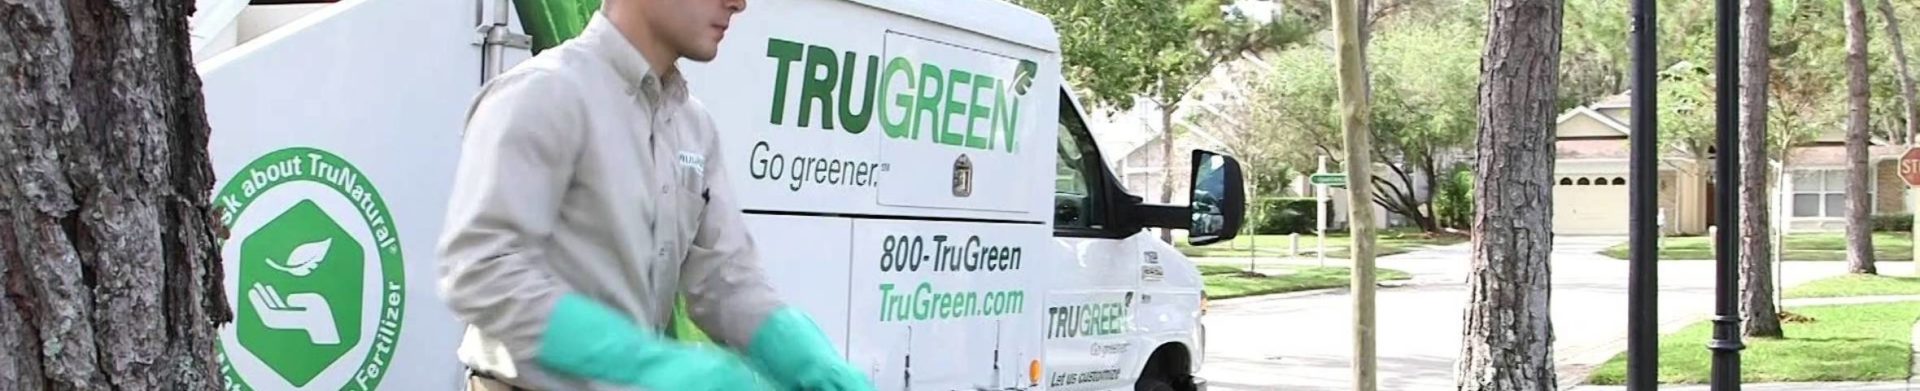 a TruGreen truck